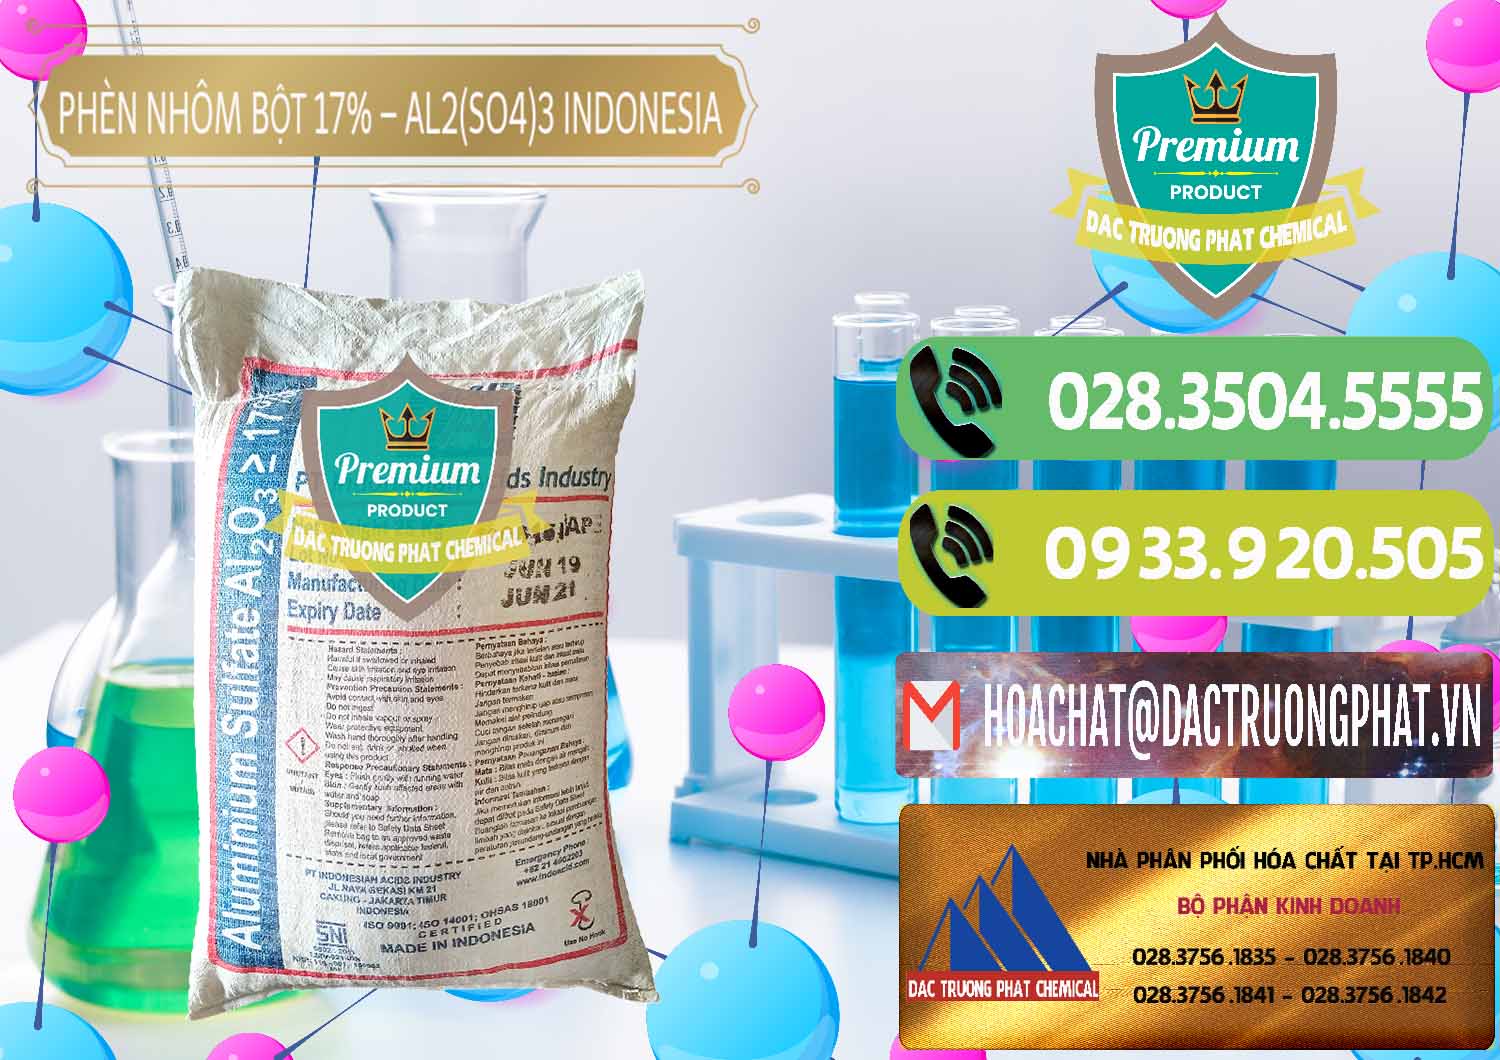 Cty chuyên cung ứng ( bán ) Phèn Nhôm Bột - Al2(SO4)3 17% bao 25kg Indonesia - 0114 - Cty kinh doanh ( cung cấp ) hóa chất tại TP.HCM - hoachatmientay.vn